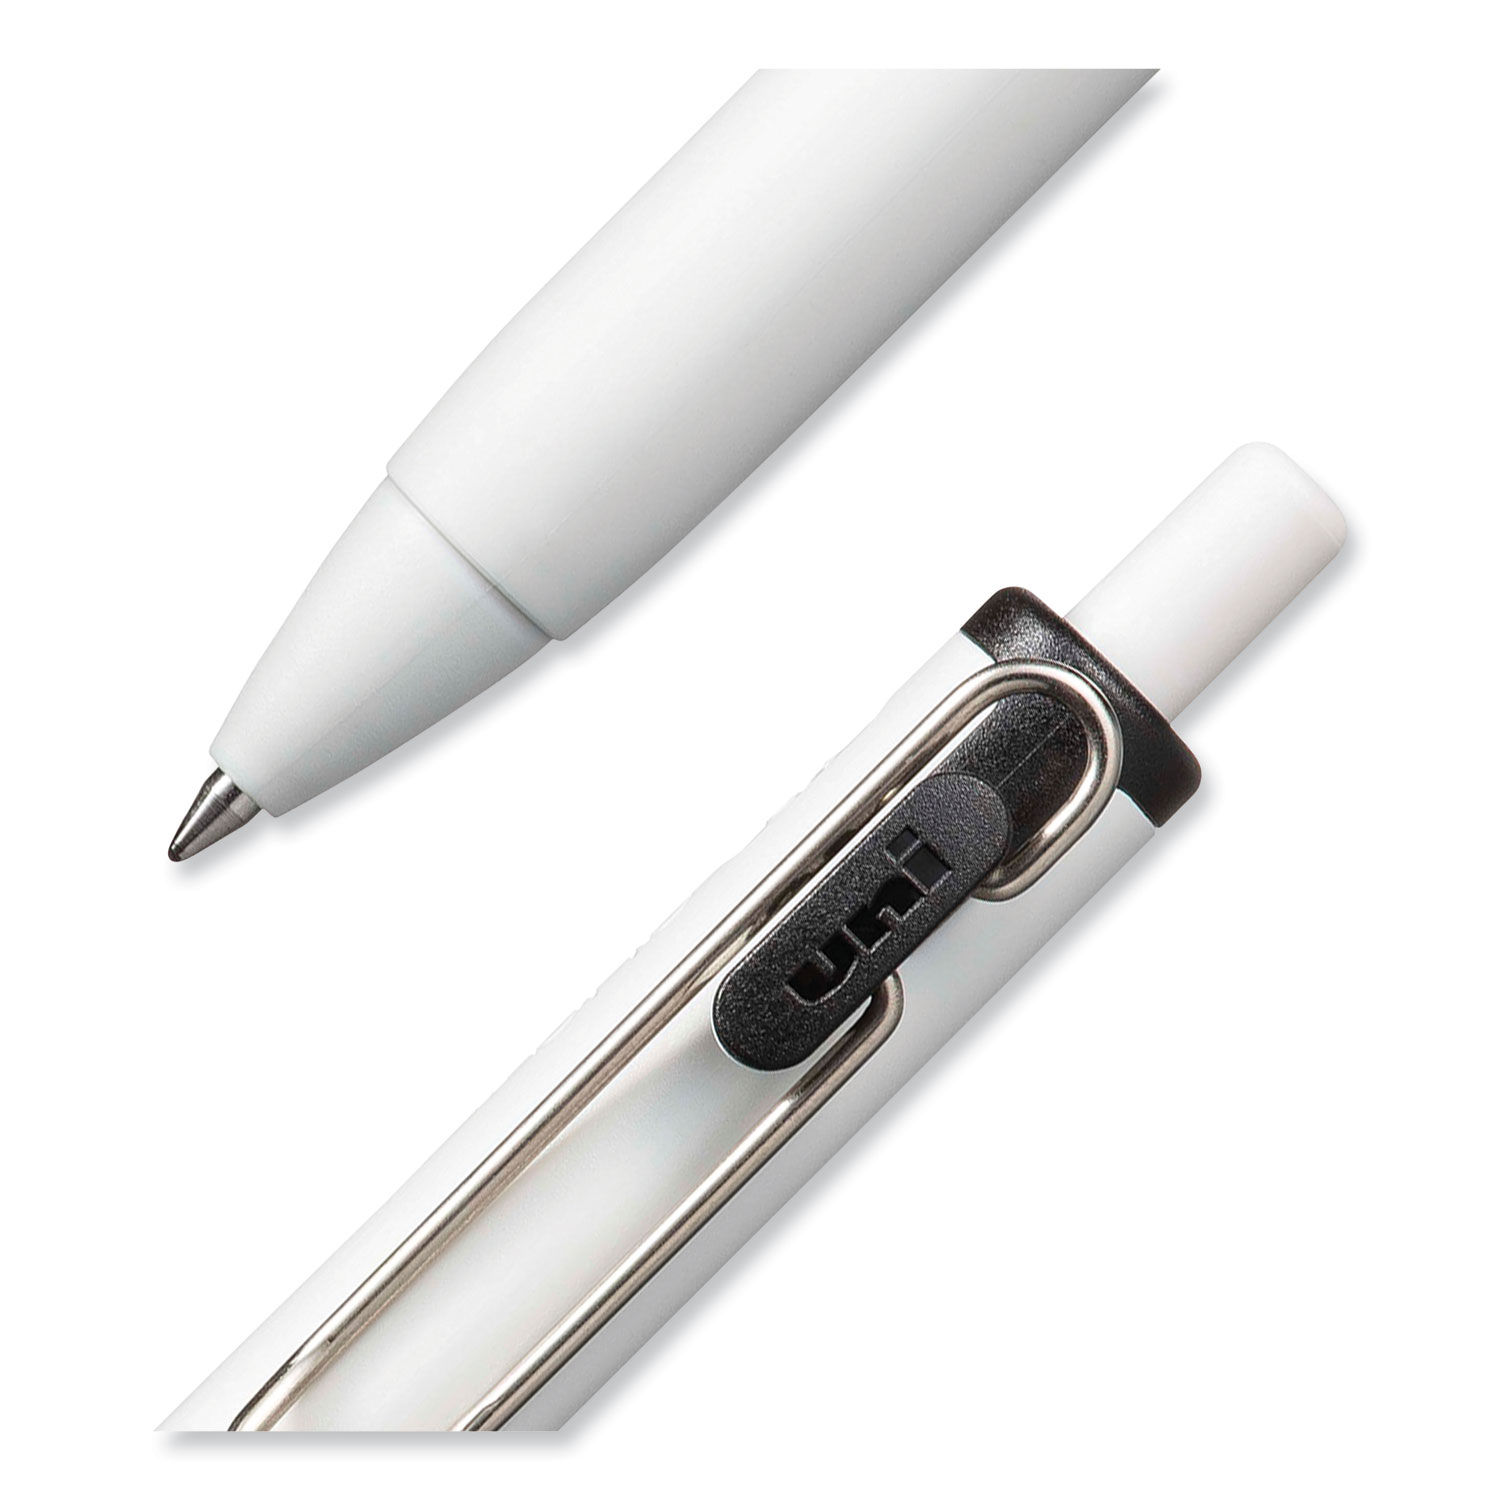 Onyx Roller Ball Pen, Stick, Micro 0.5 mm, Blue Ink, Black Matte Barrel, Dozen